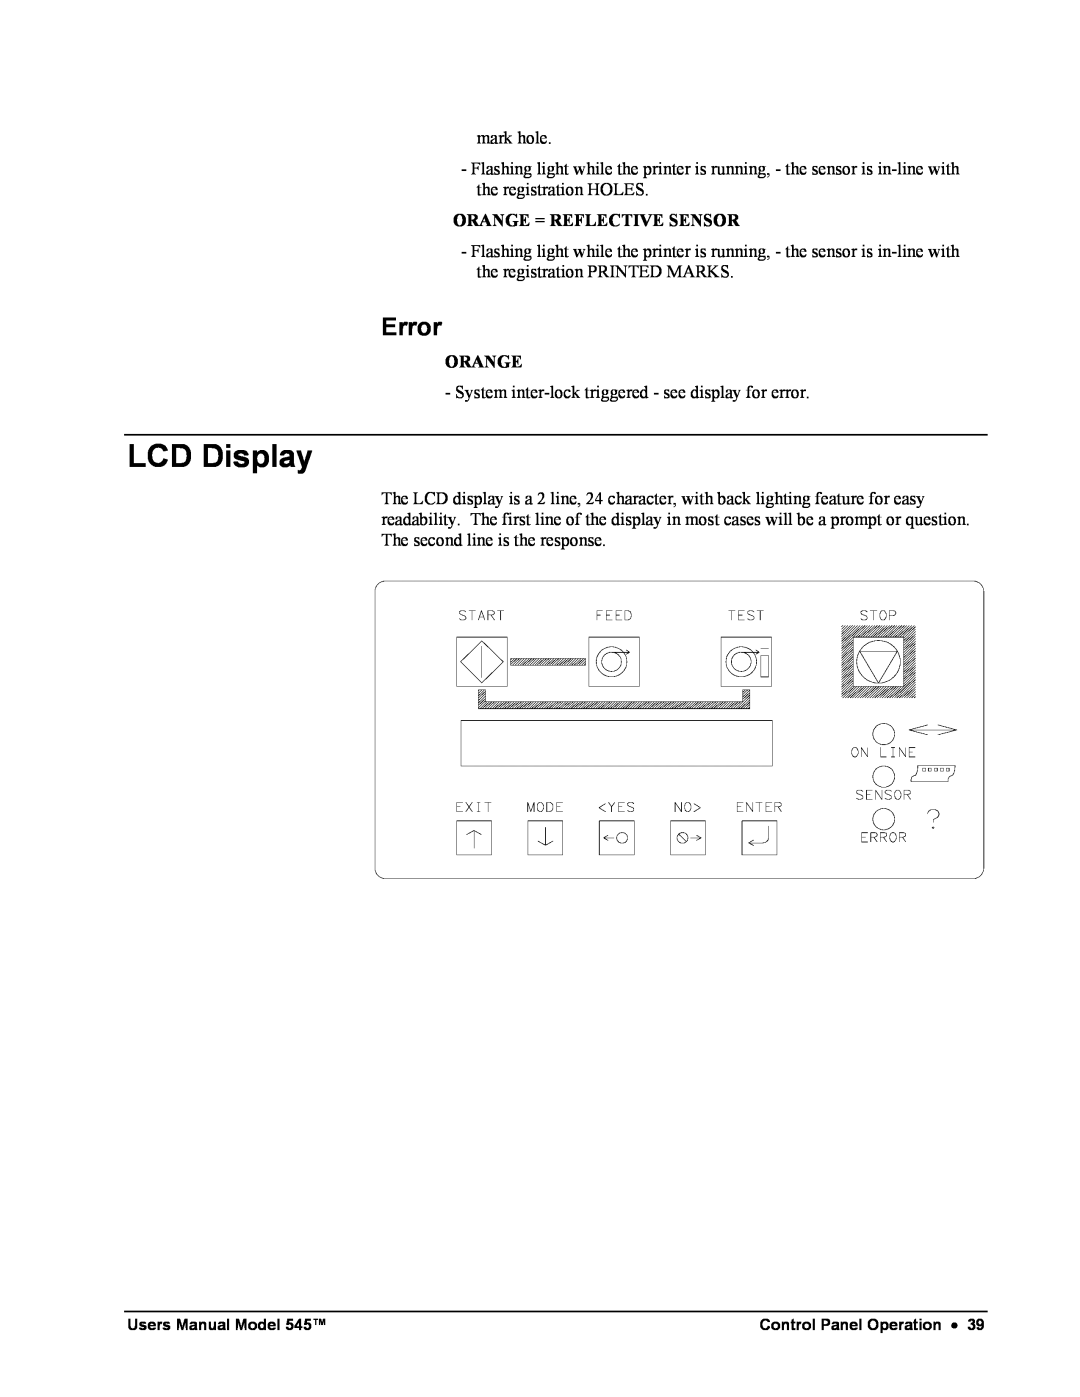 Paxar 545 user manual LCD Display, Error 